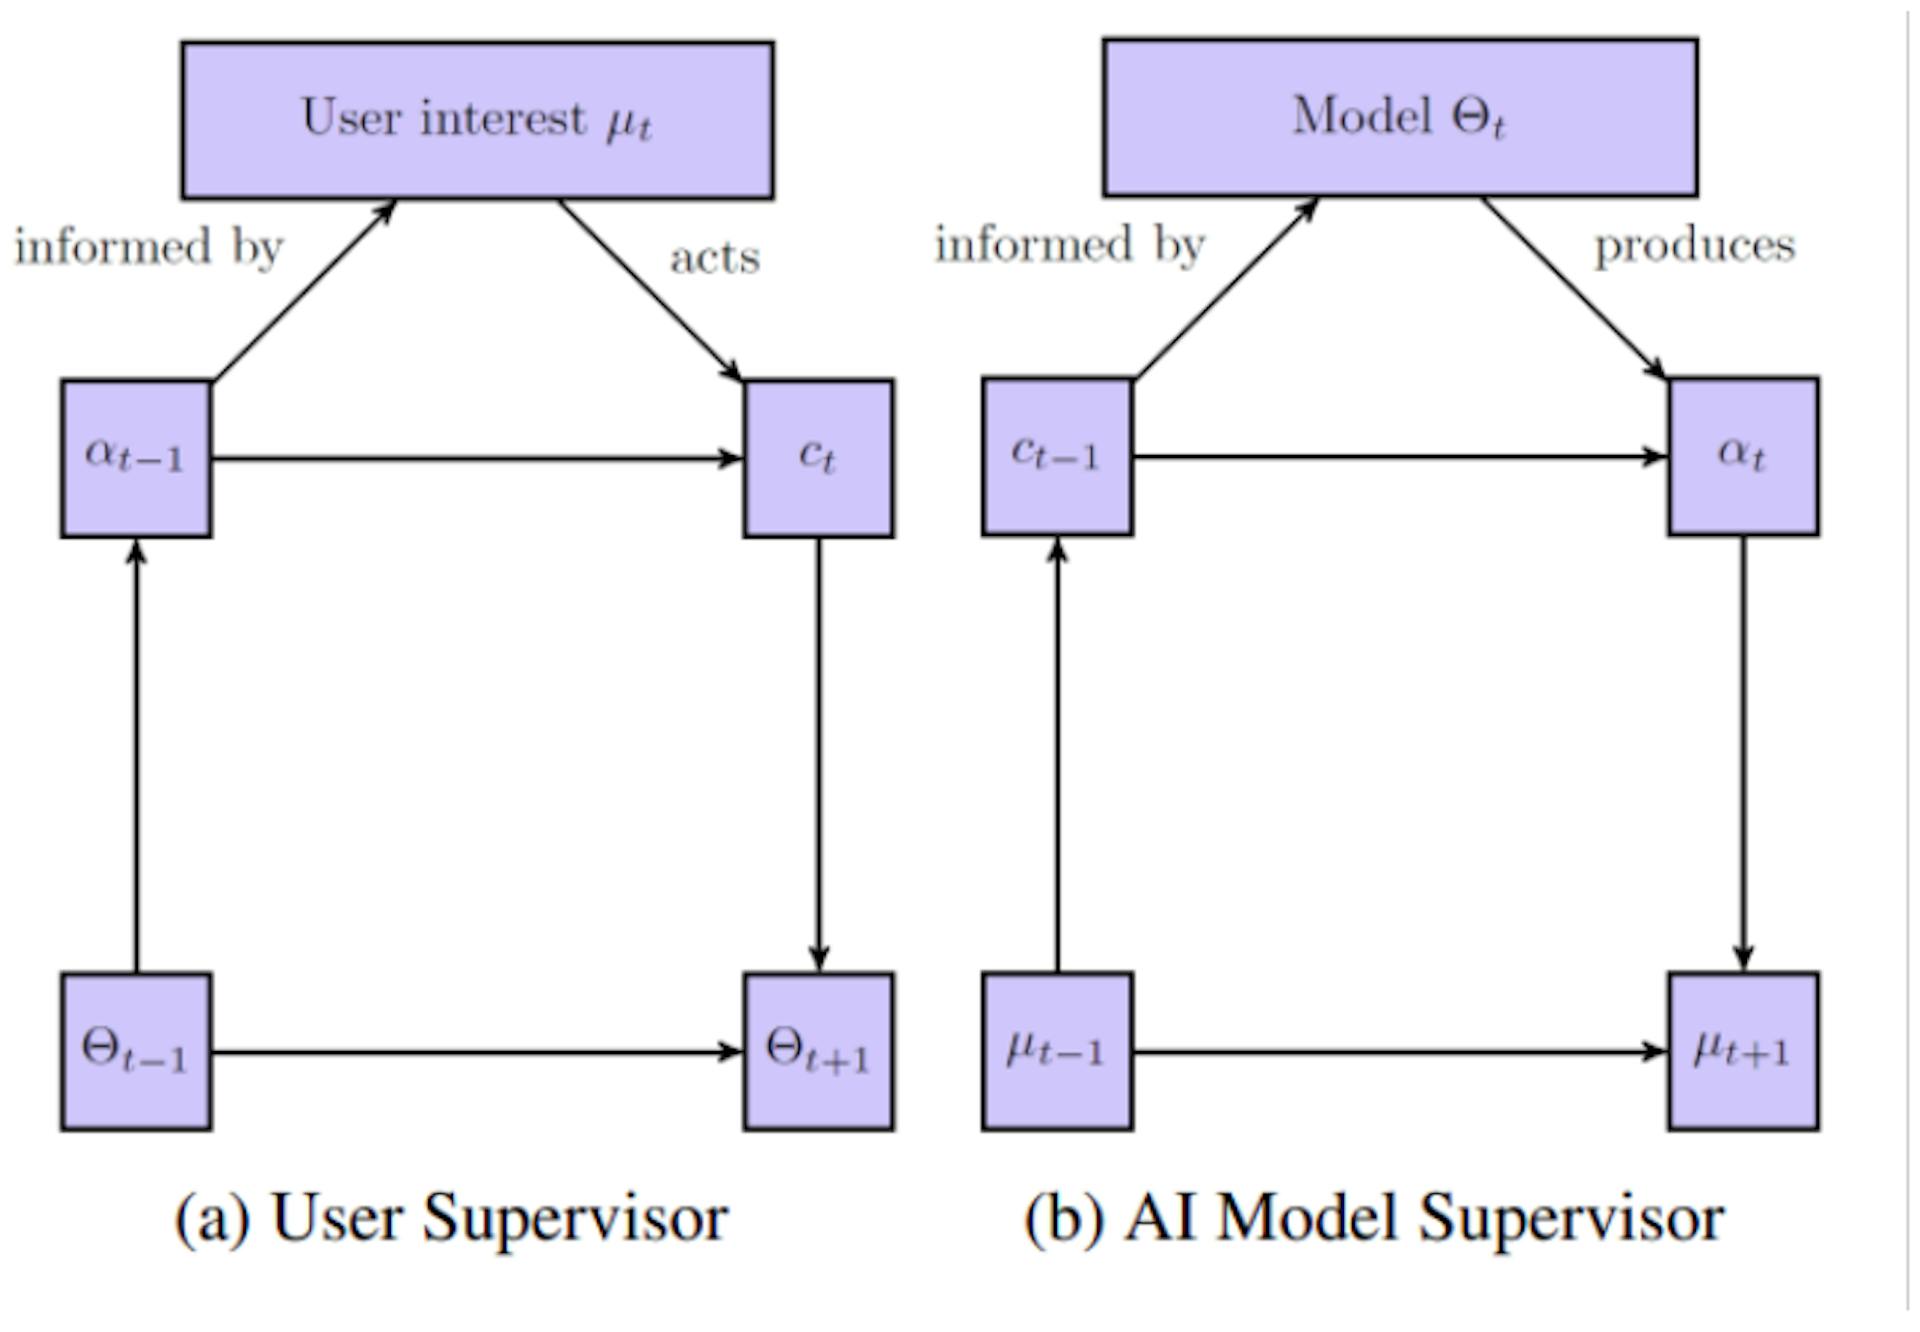 Figura 1: Uma representação esquemática do fluxo de controle em sistemas de recomendação visto da perspectiva do usuário (a) e do modelo AI (b). Adaptado de Rakova e Chowdhury (2019).